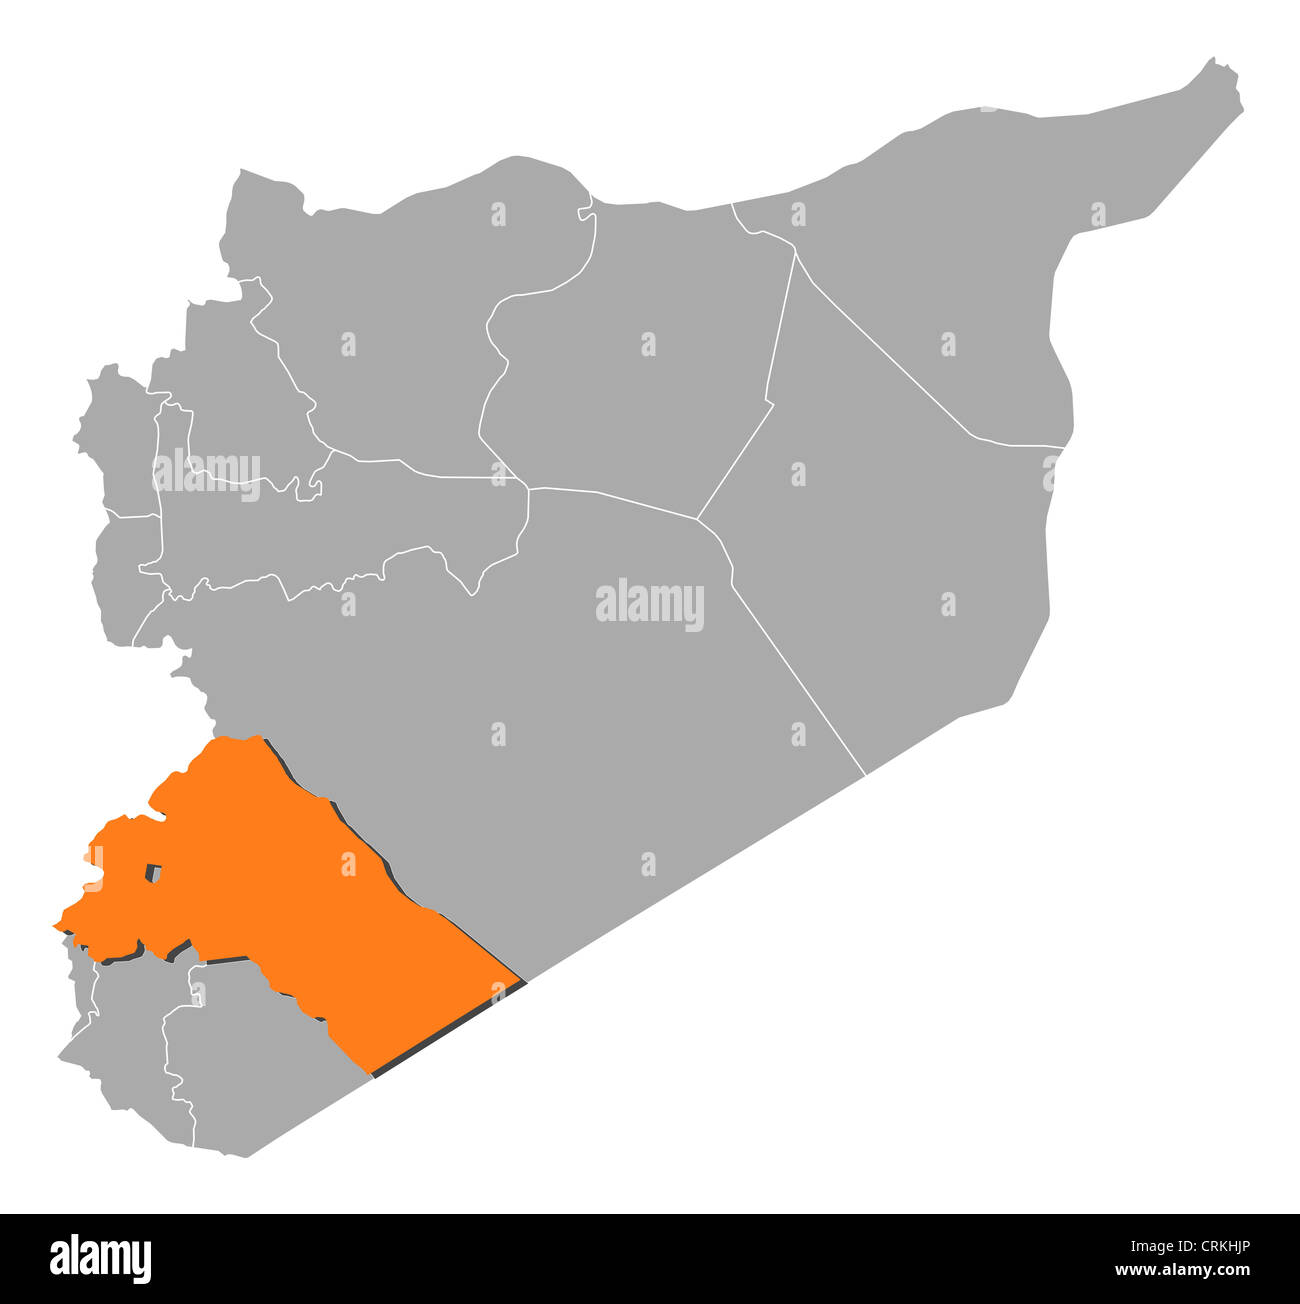 Mappa Politico della Siria con i vari governatorati dove Rif Dimashq è evidenziata. Foto Stock